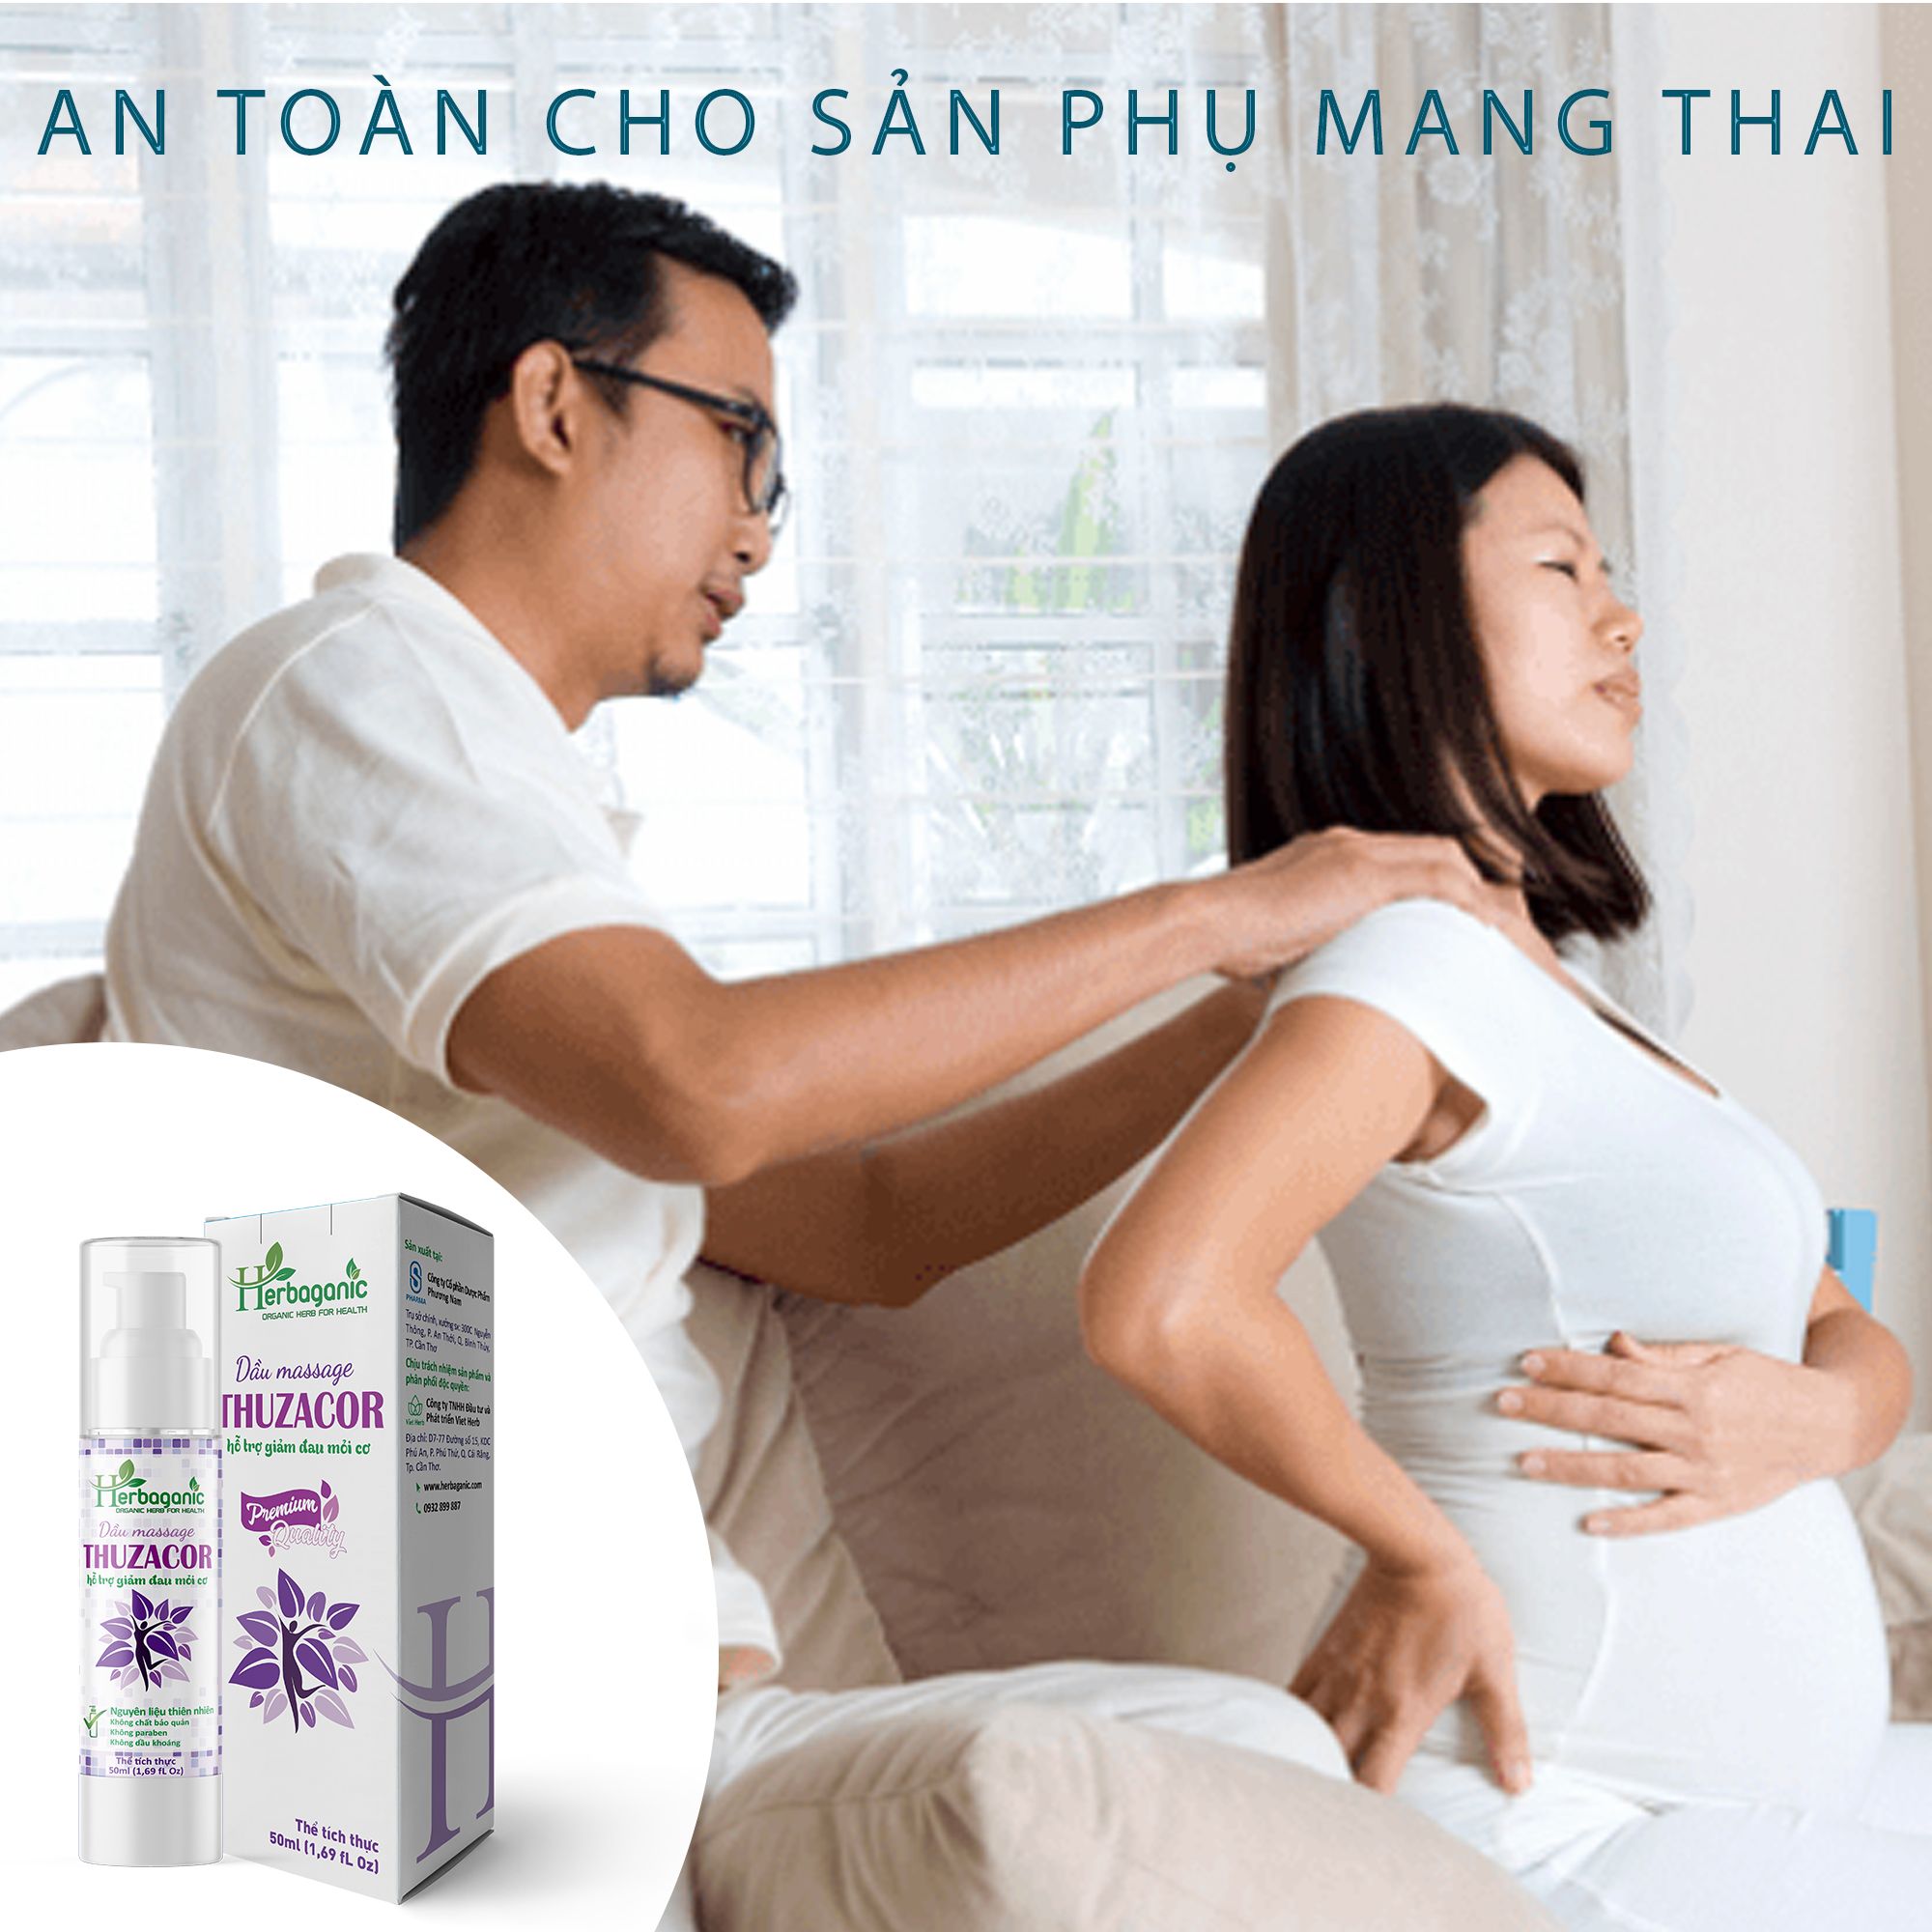  Herbaganic - Dầu massage Thuzacor 50ml - Giảm mỏi cơ, đau vai gáy, đau lưng, dưỡng ẩm da, an toàn cho phụ nữ mang thai 